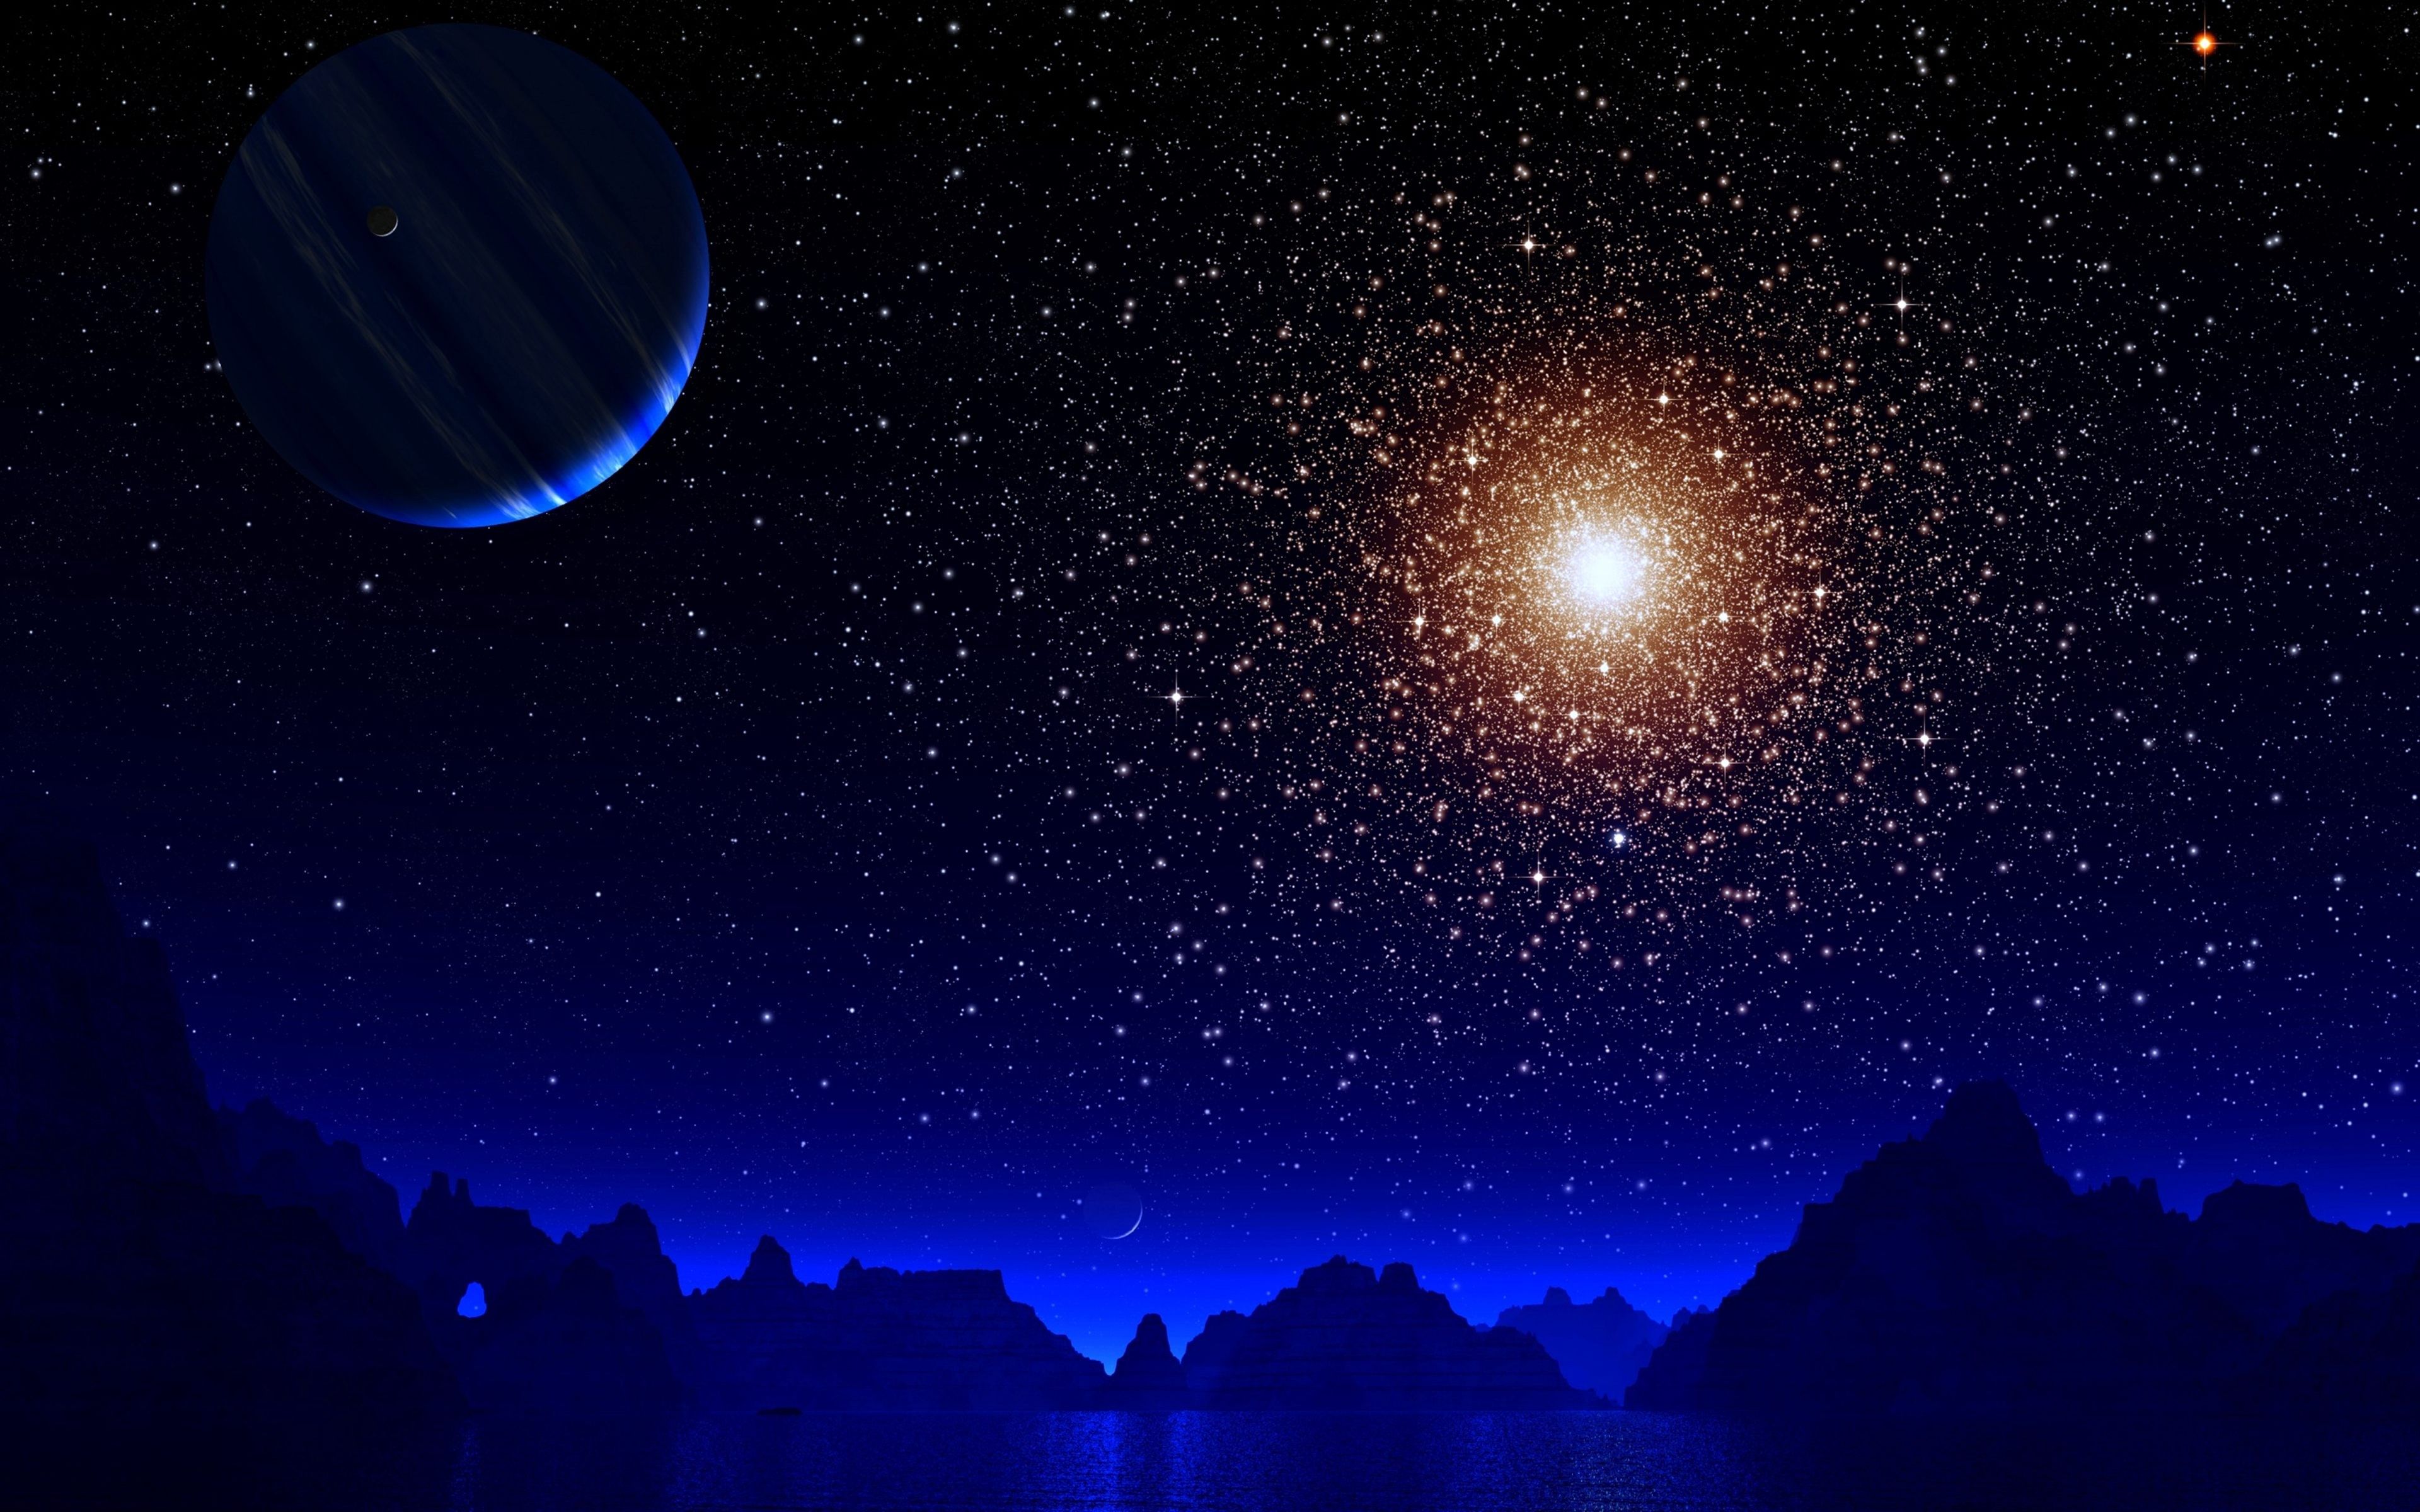 blue night moon and stars 4k ultra HD wallpaper. Wallpaper space, Night sky photography, Star wallpaper